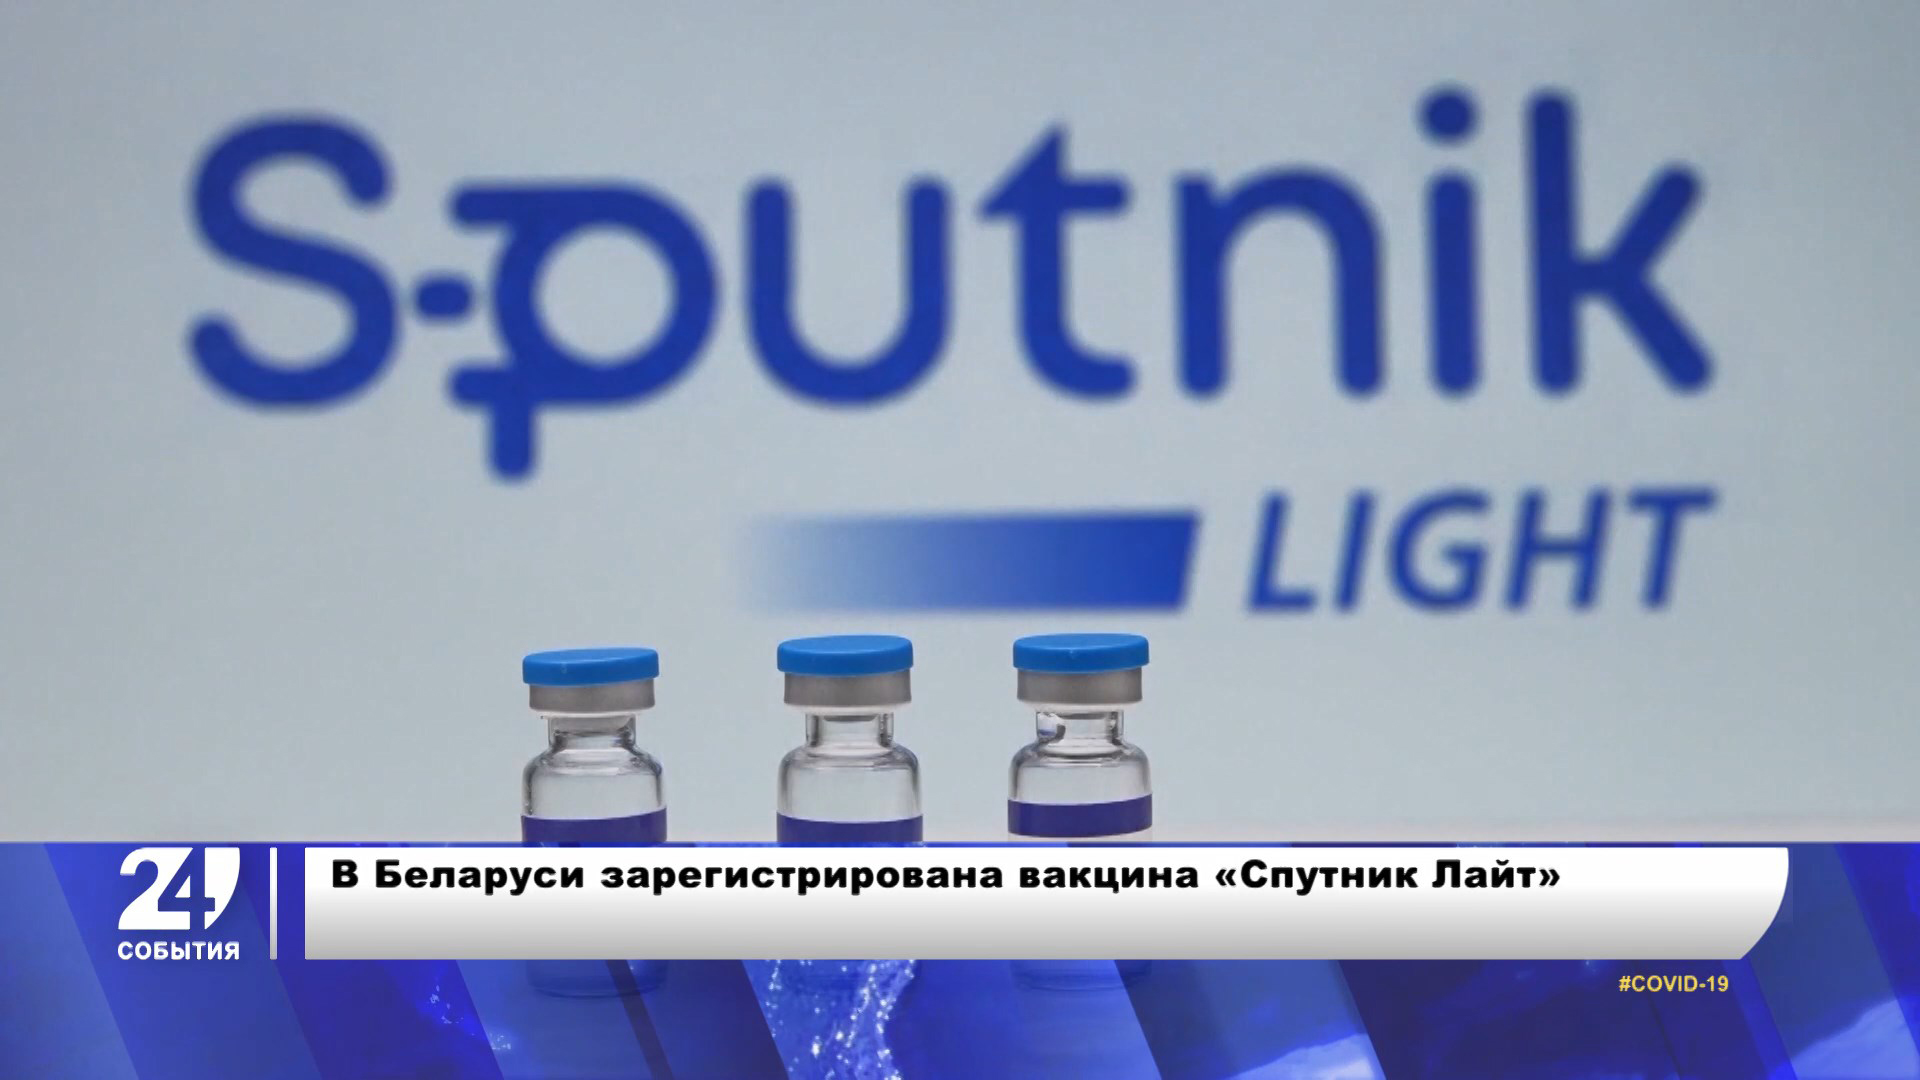 Регистрации вакцины «Спутник Лайт» в Беларуси